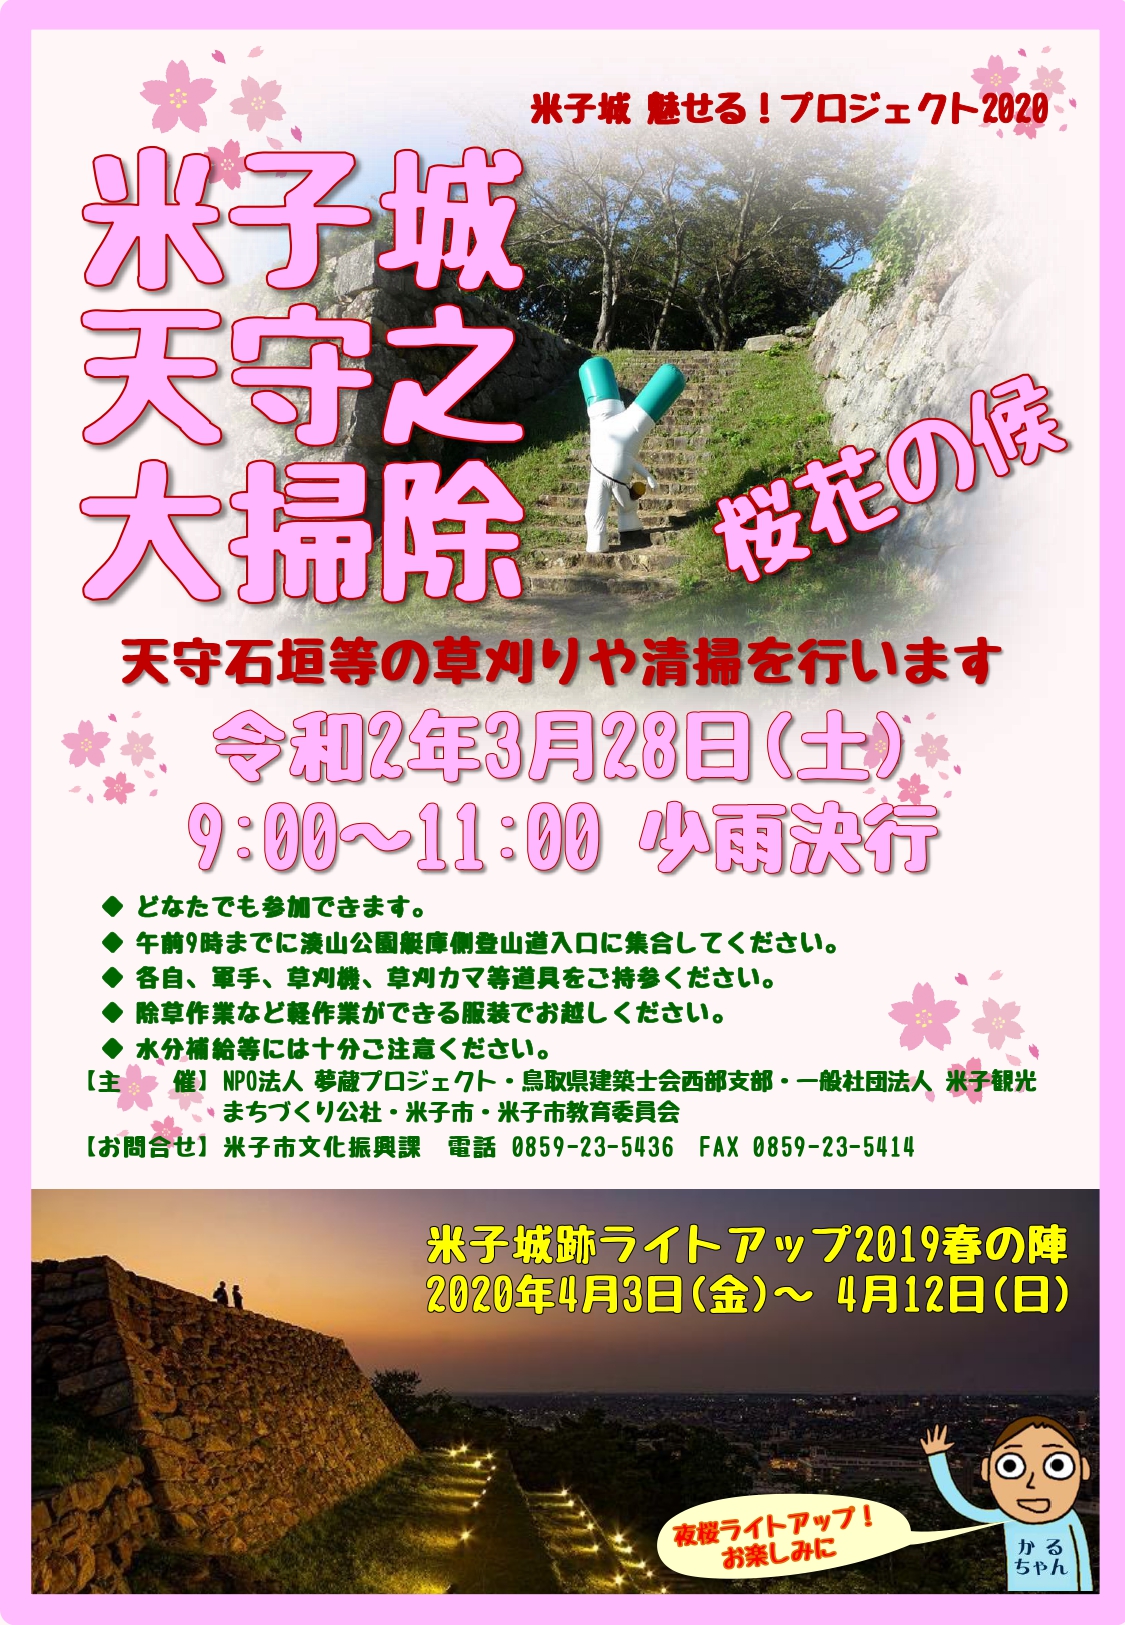 米子城跡の石垣清掃ボランティアの募集チラシです